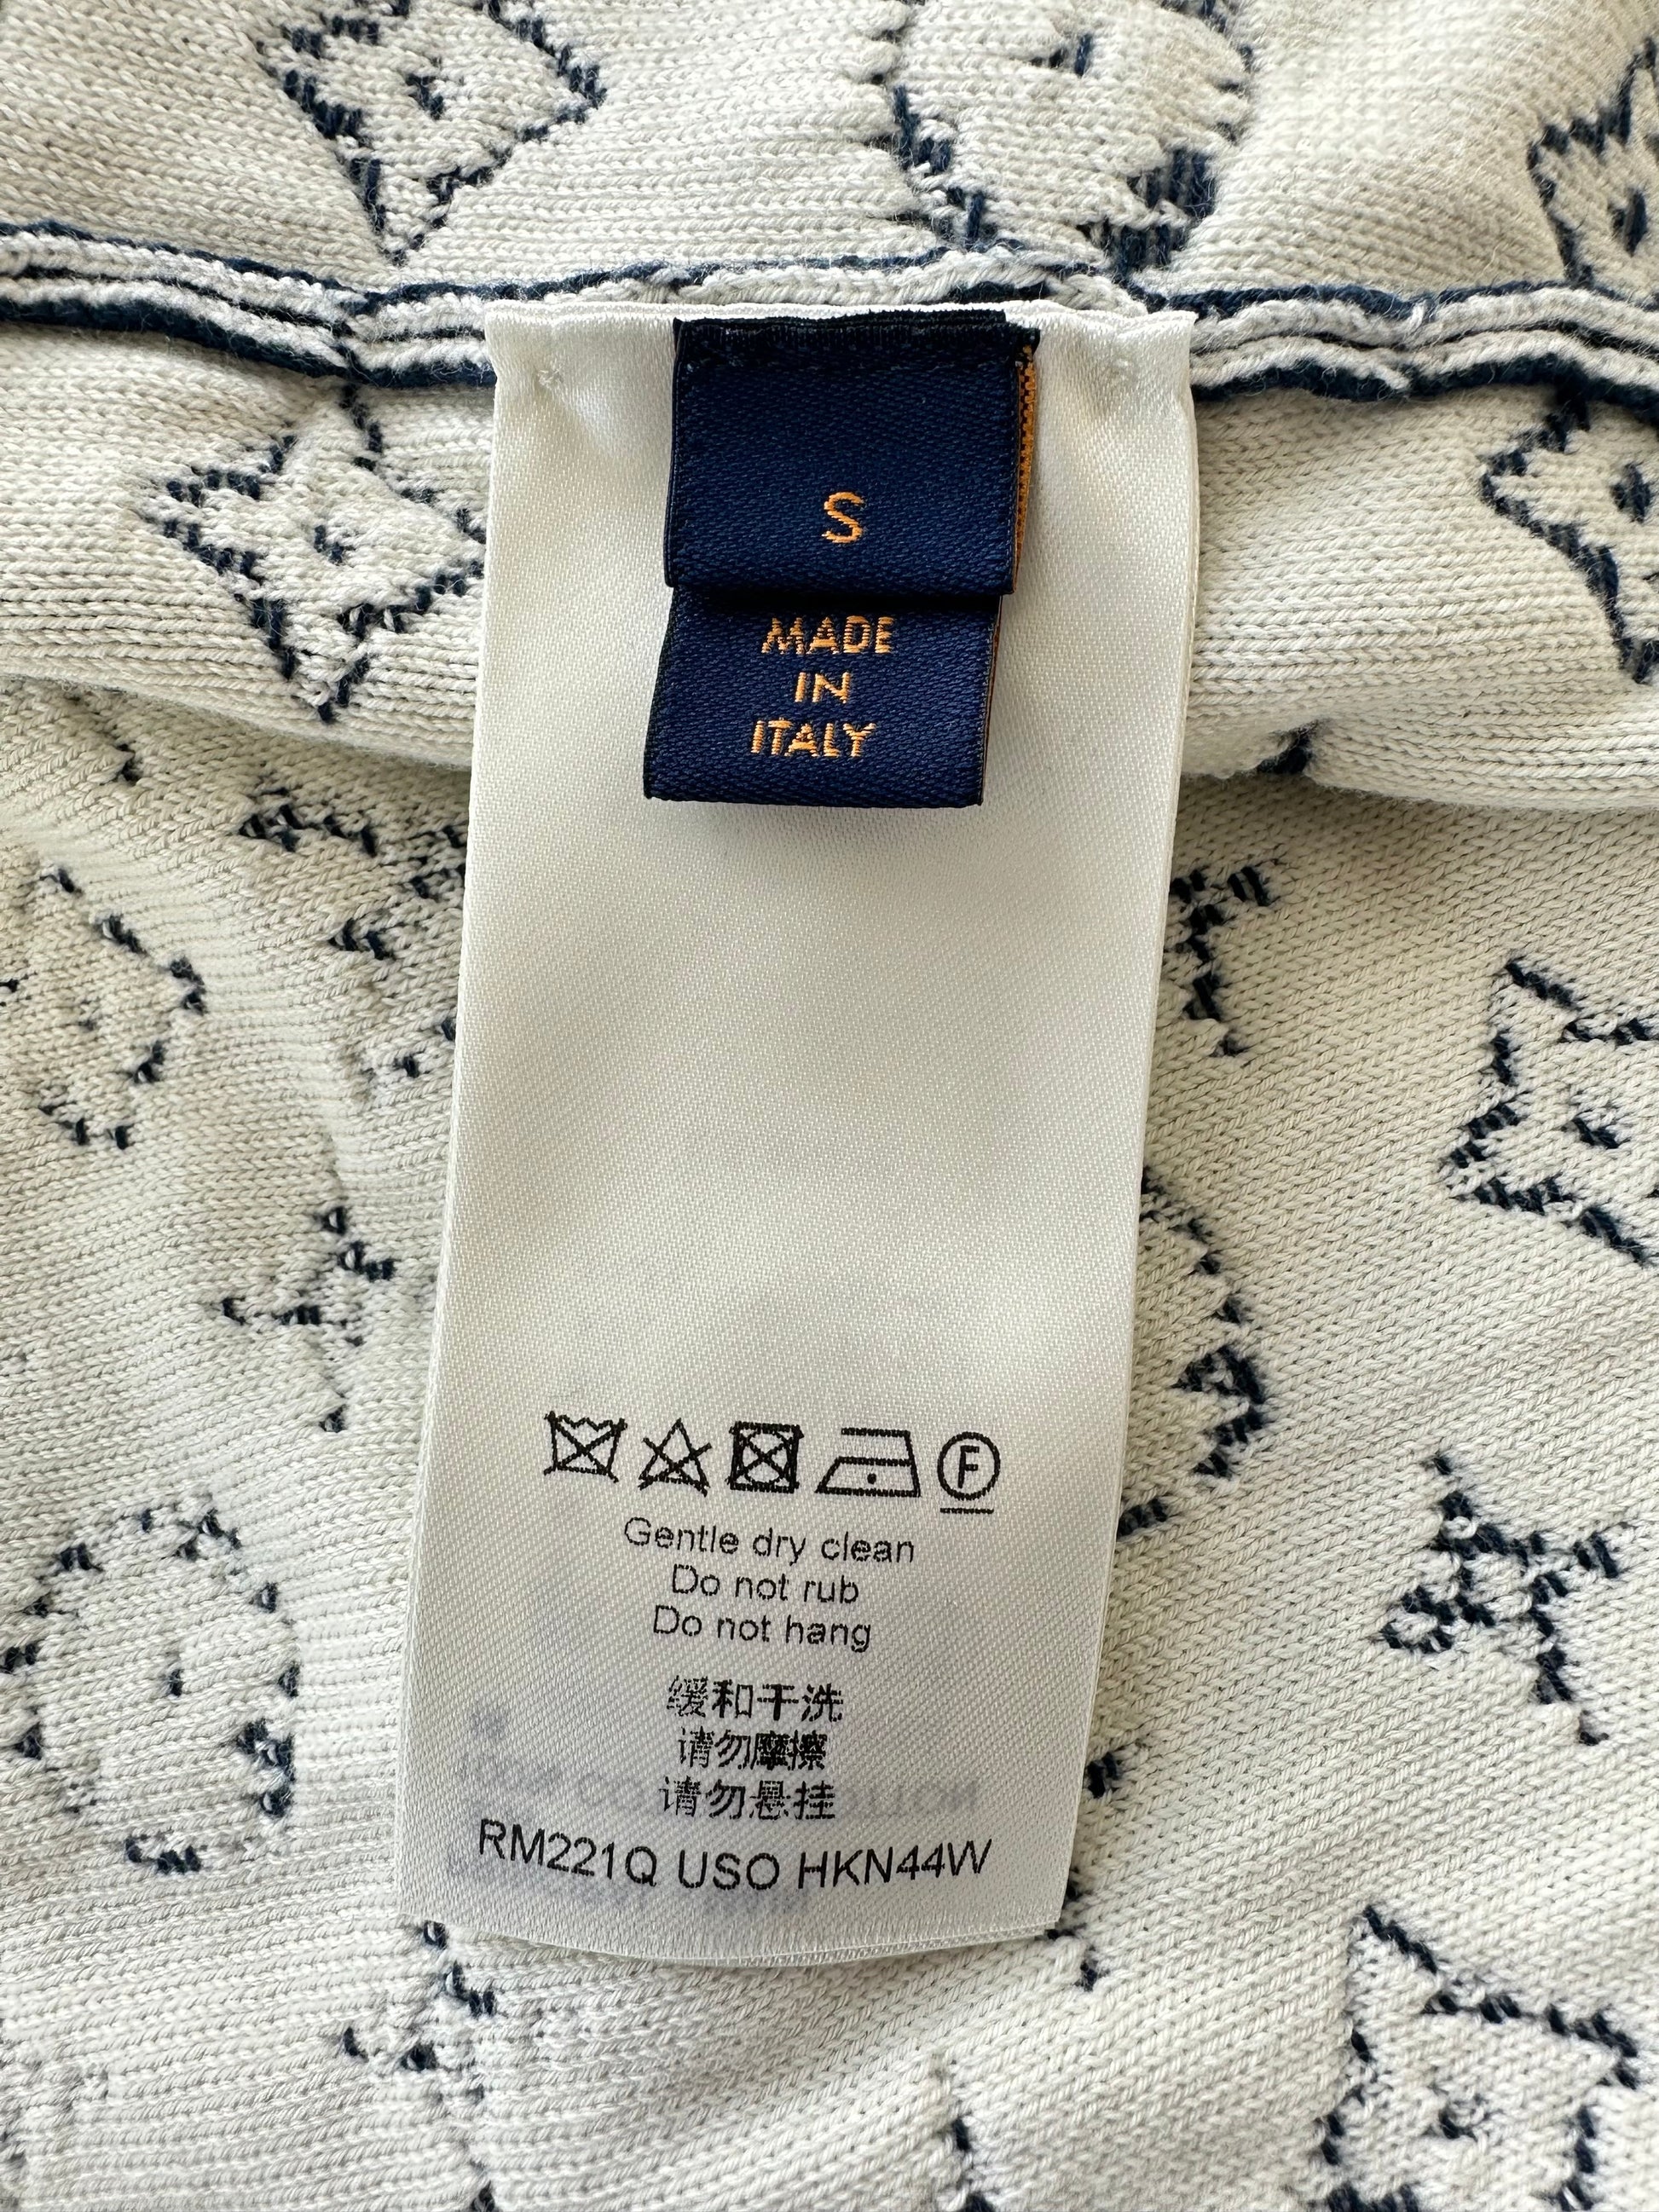 Louis Vuitton Navy & White Monogram Gradient Sweater – Savonches